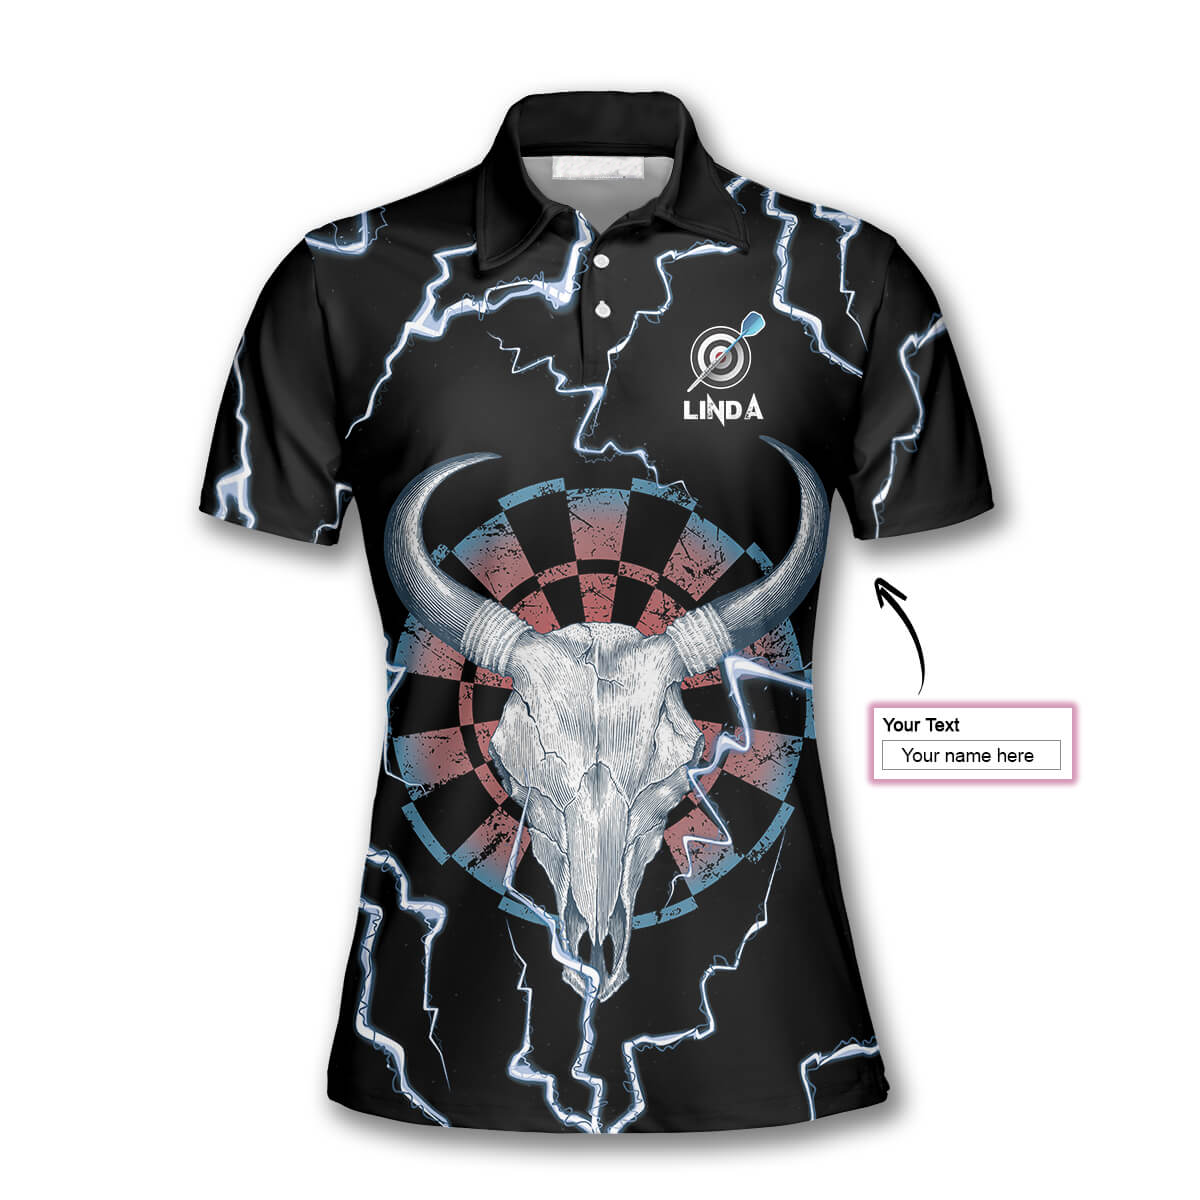 Darts Bullseye Thunder Skull Custom Darts Shirts for Women